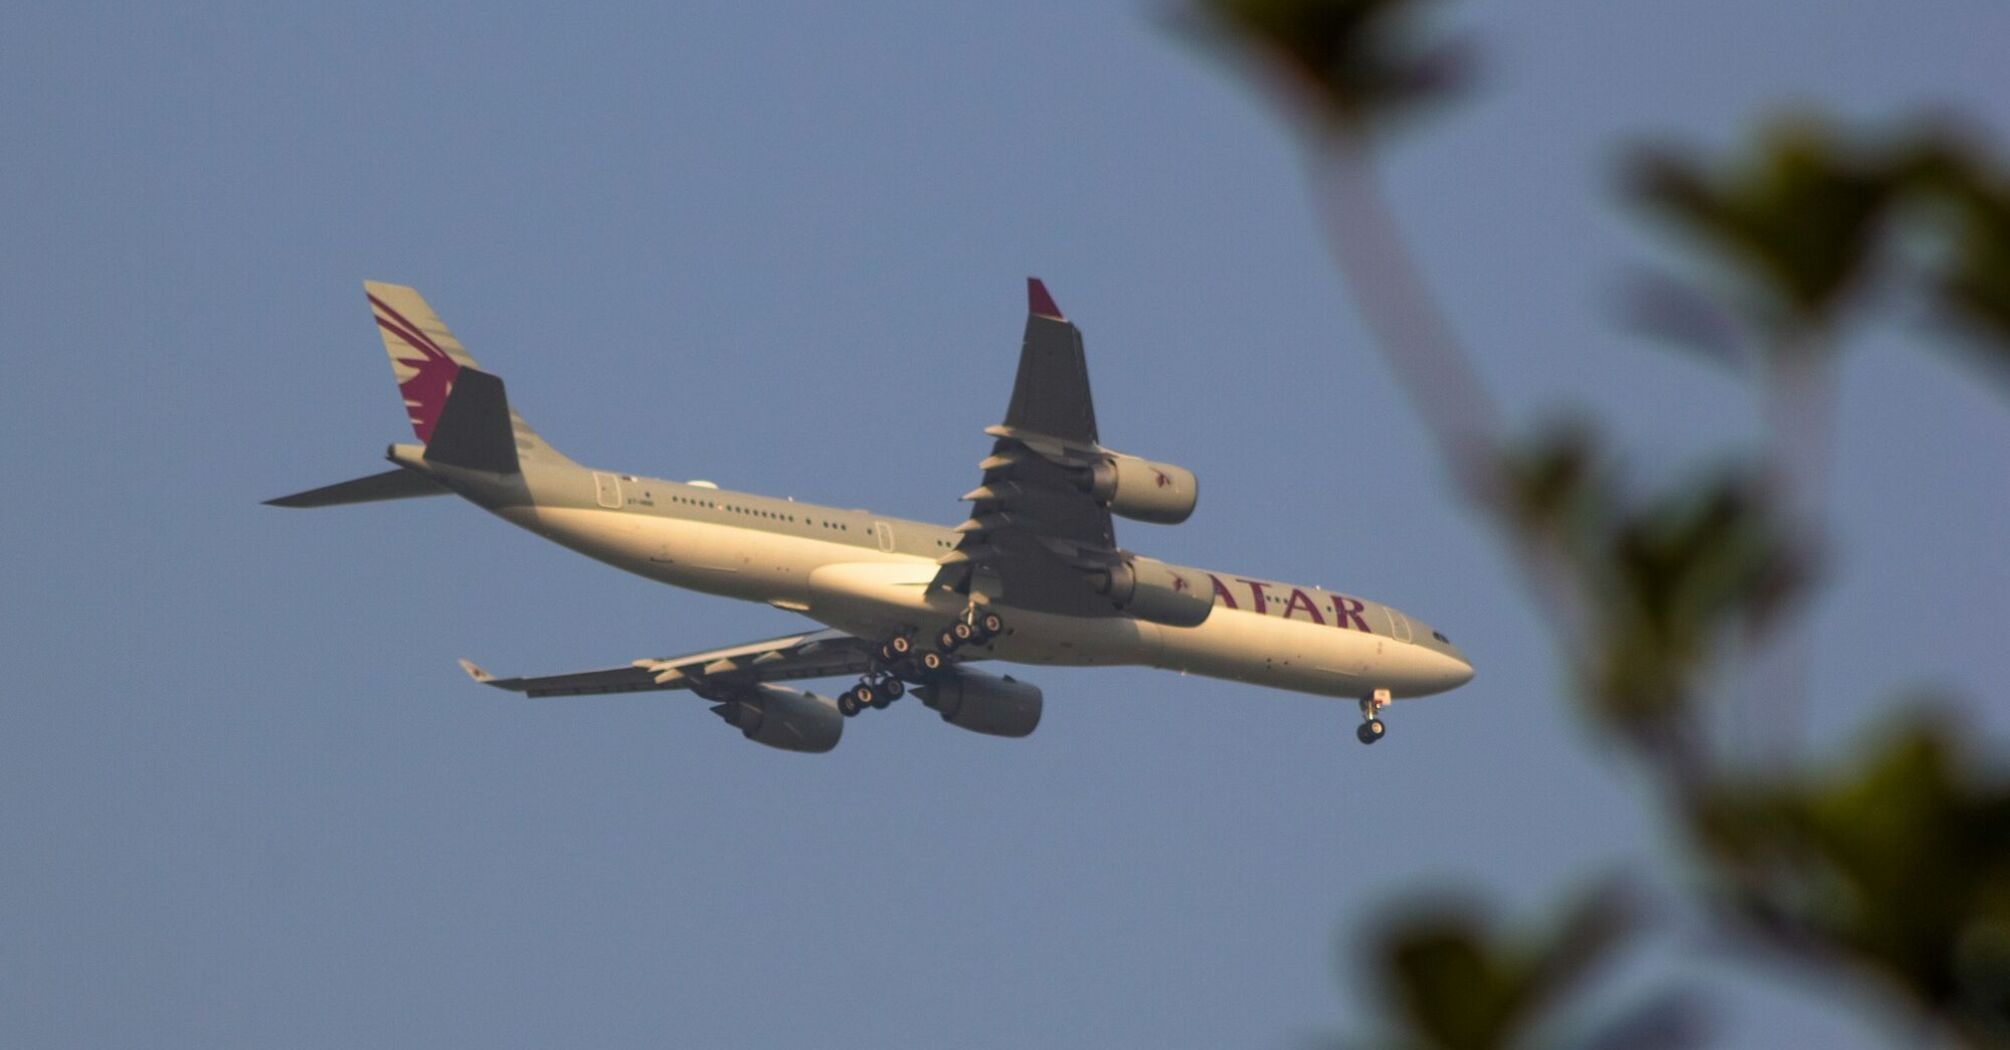 Qatar Airways airplane in flight